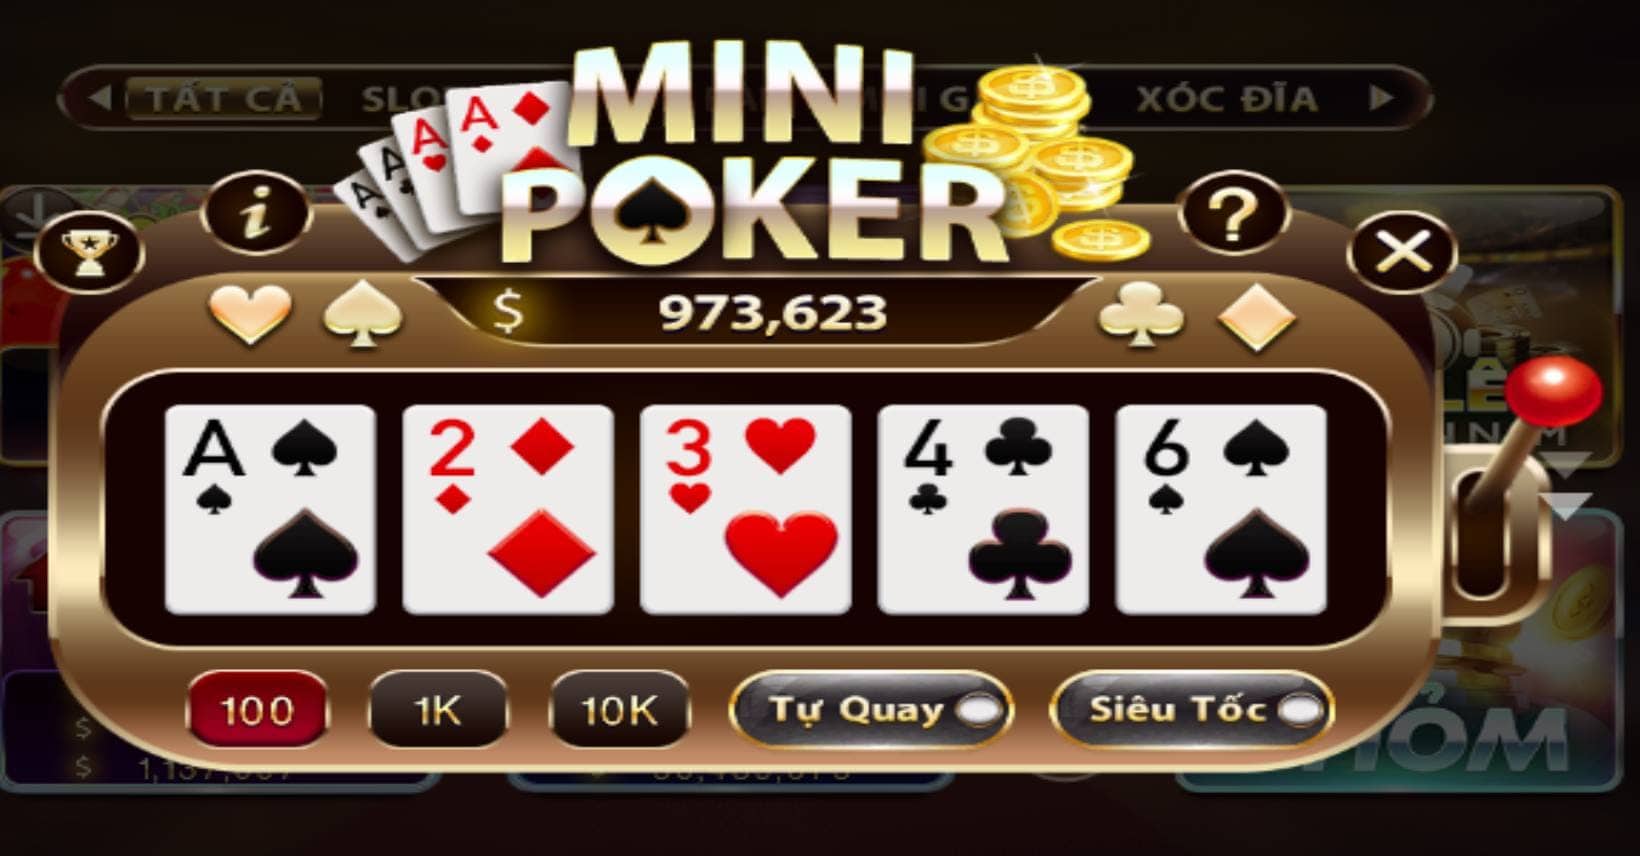 Giai ma game no hu Mini Poker Sunwin an hu 49 000 000